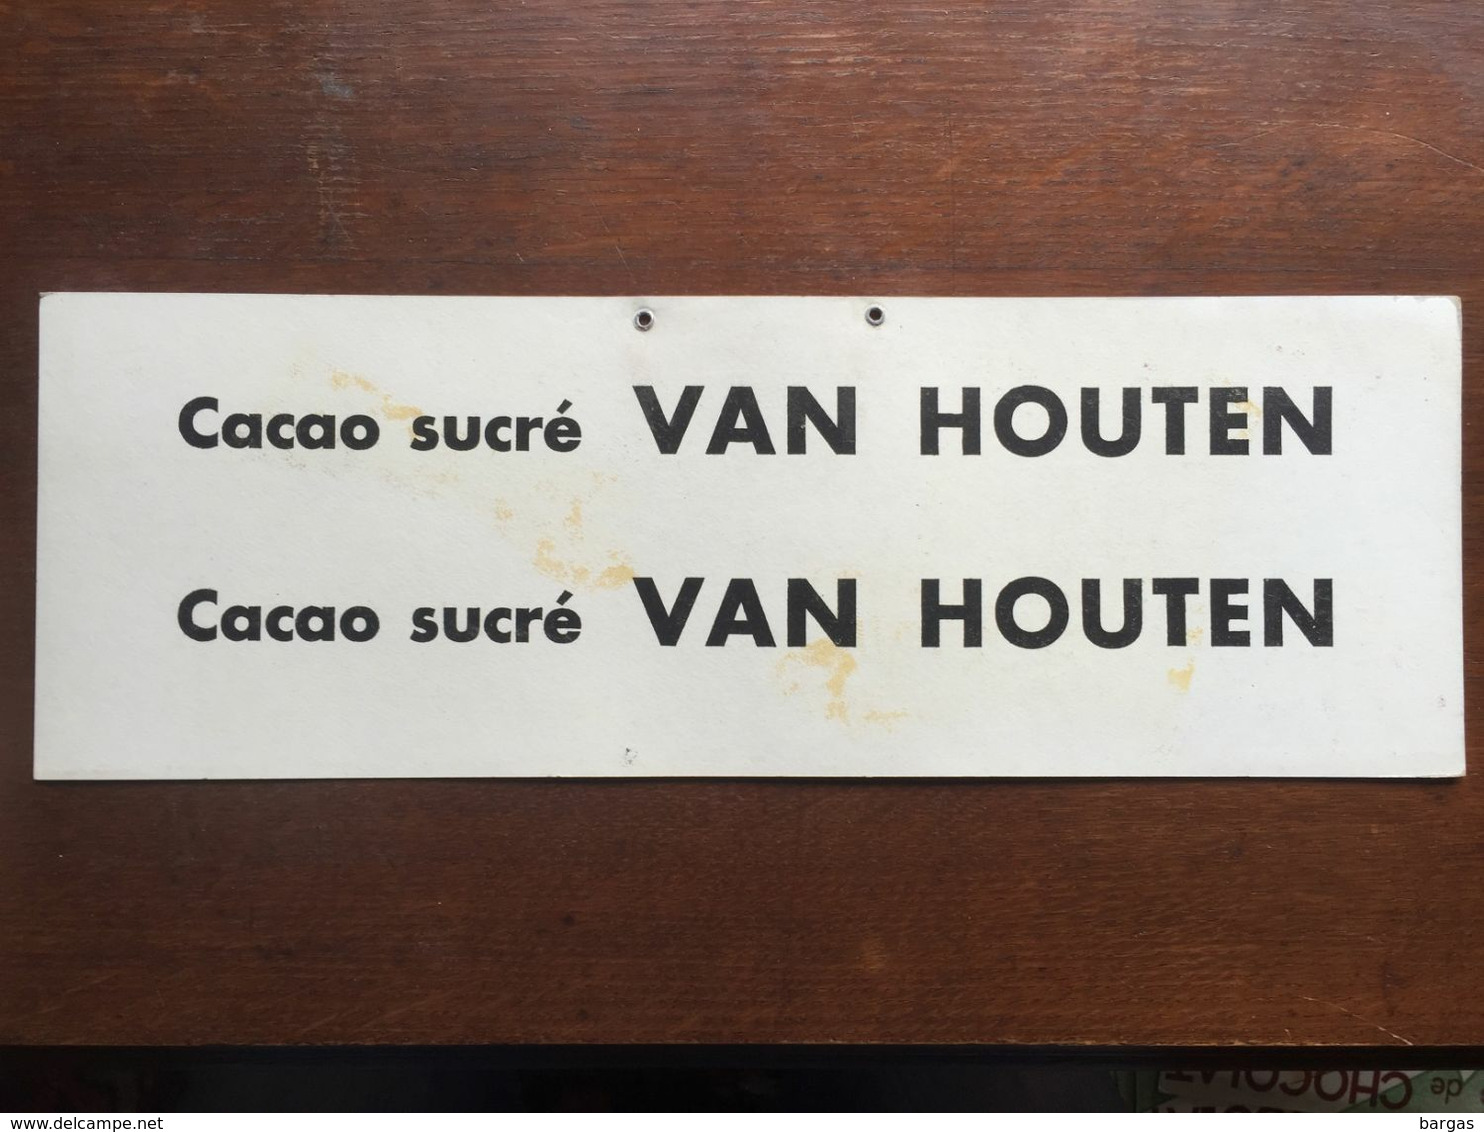 Carton Publicitaire à Suspendre Cacao Chocolat Van Houten - Affiches